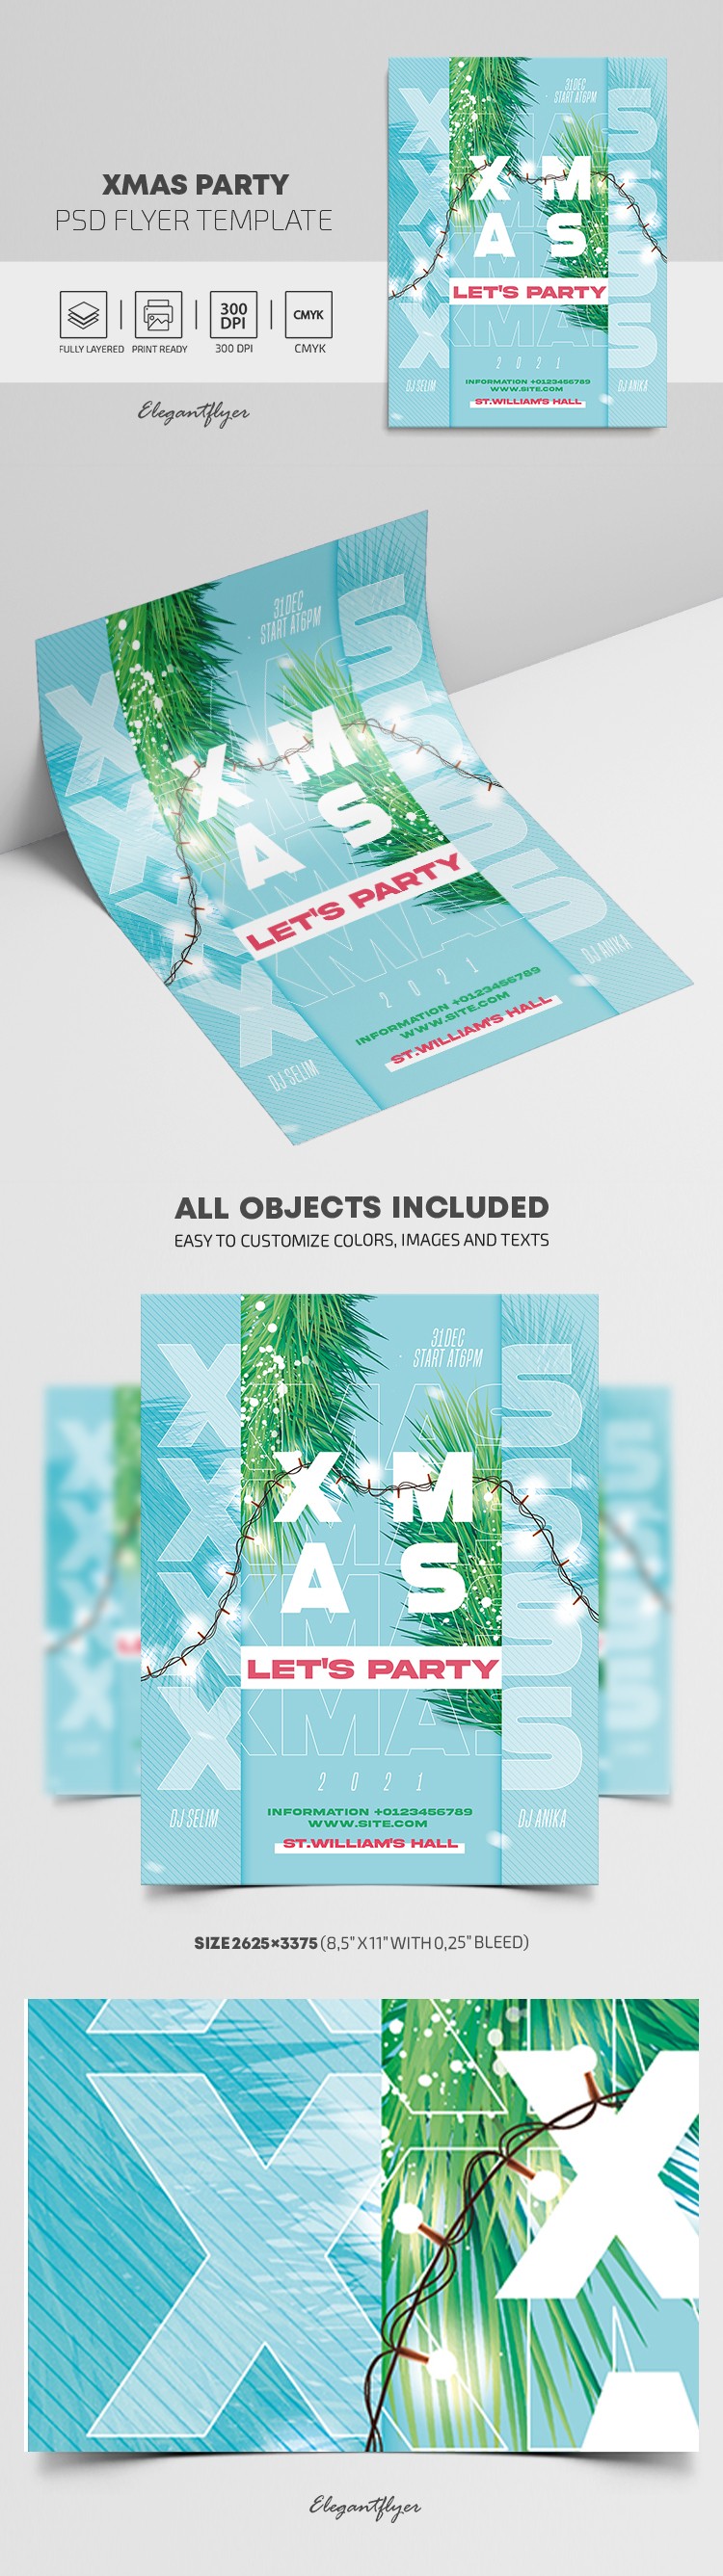 Xmas Party Flyer by ElegantFlyer